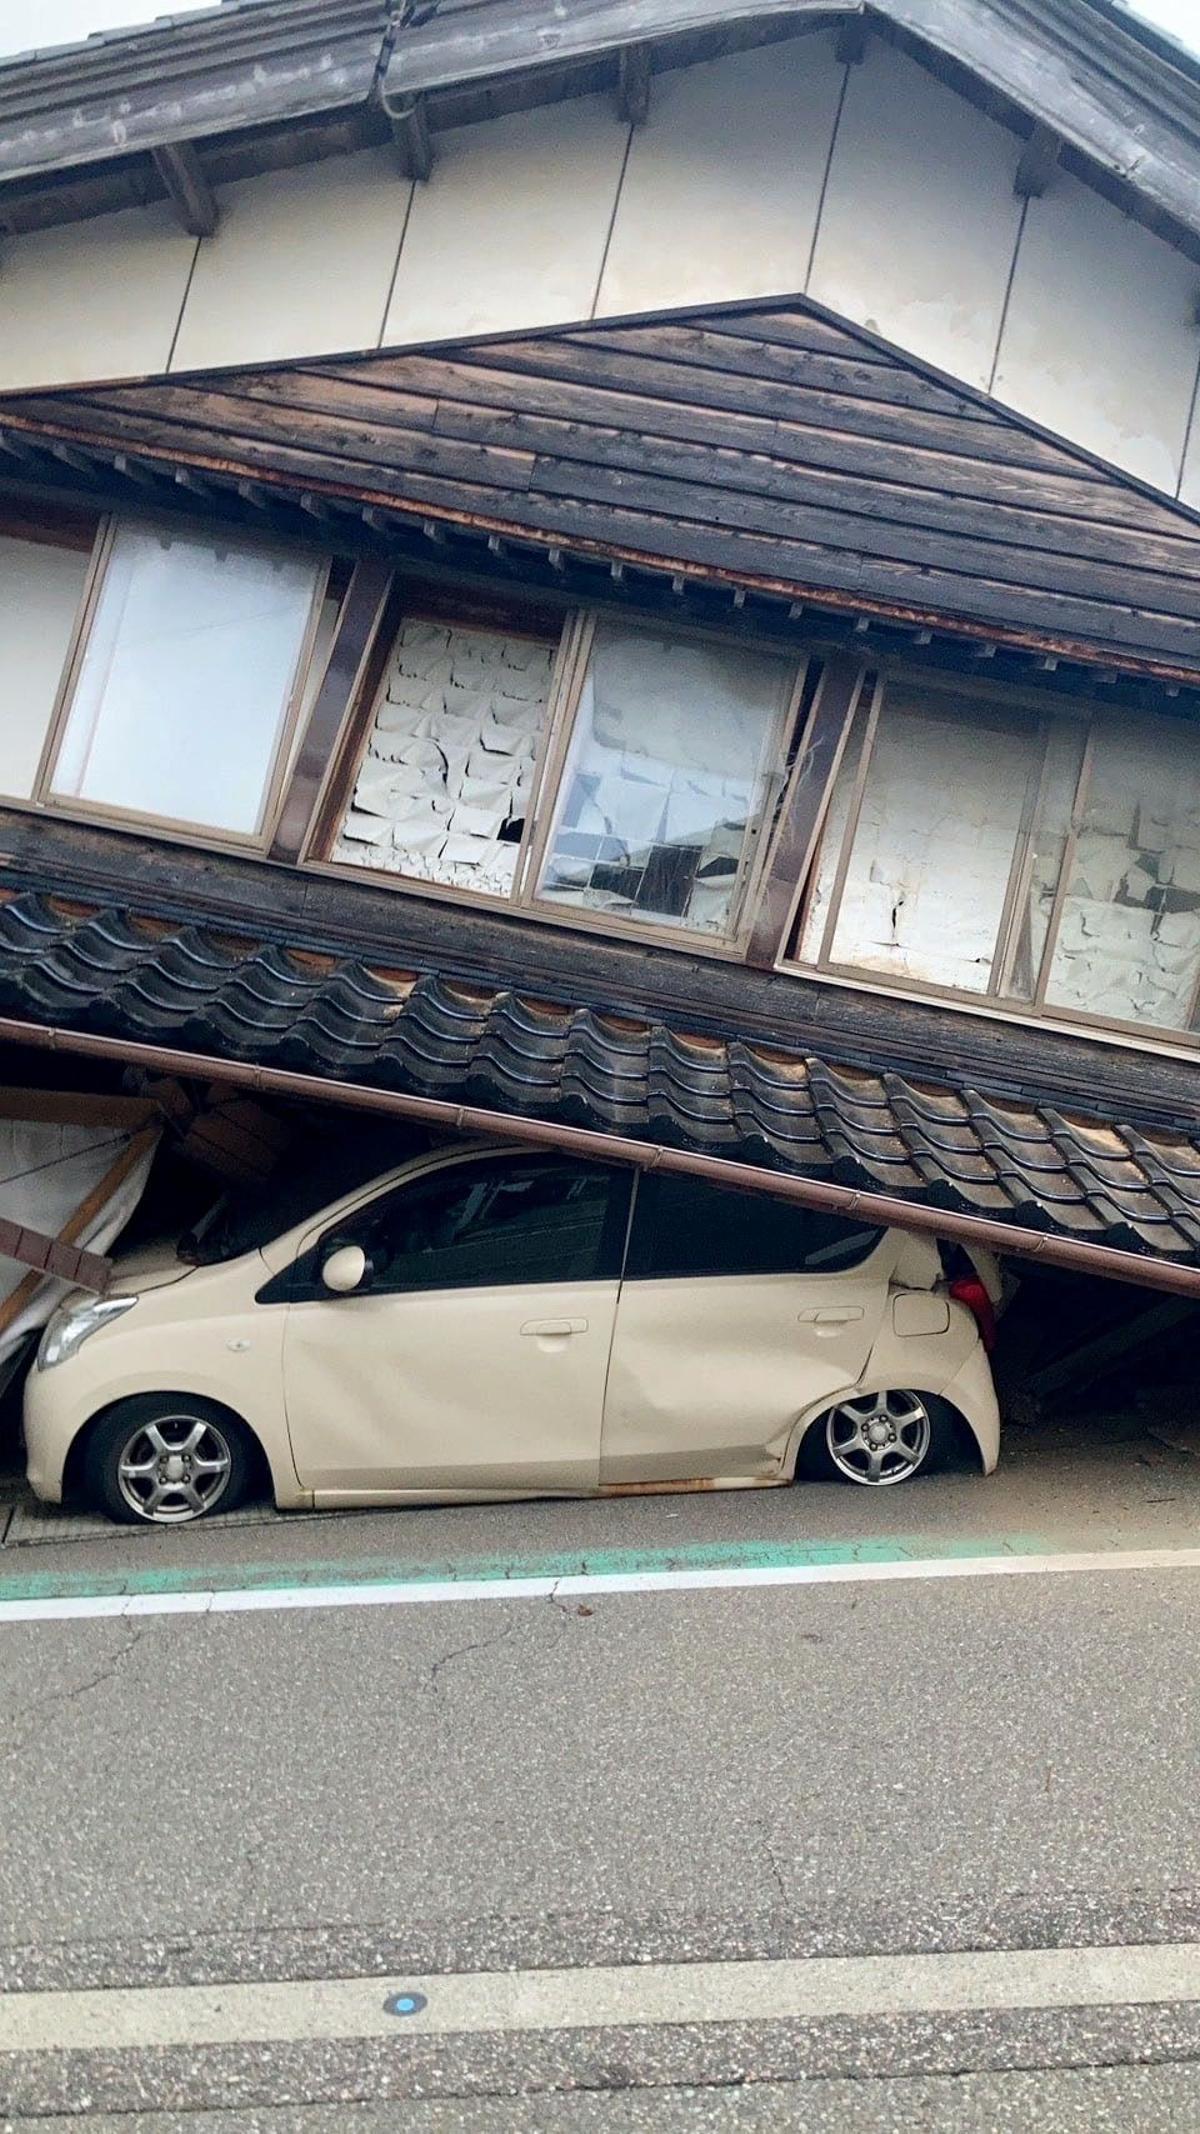 Un automóvil queda atrapado debajo de una casa derrumbada por el efecto de un terremoto, en la ciudad de Shika, prefectura de Ishikawa, Japón